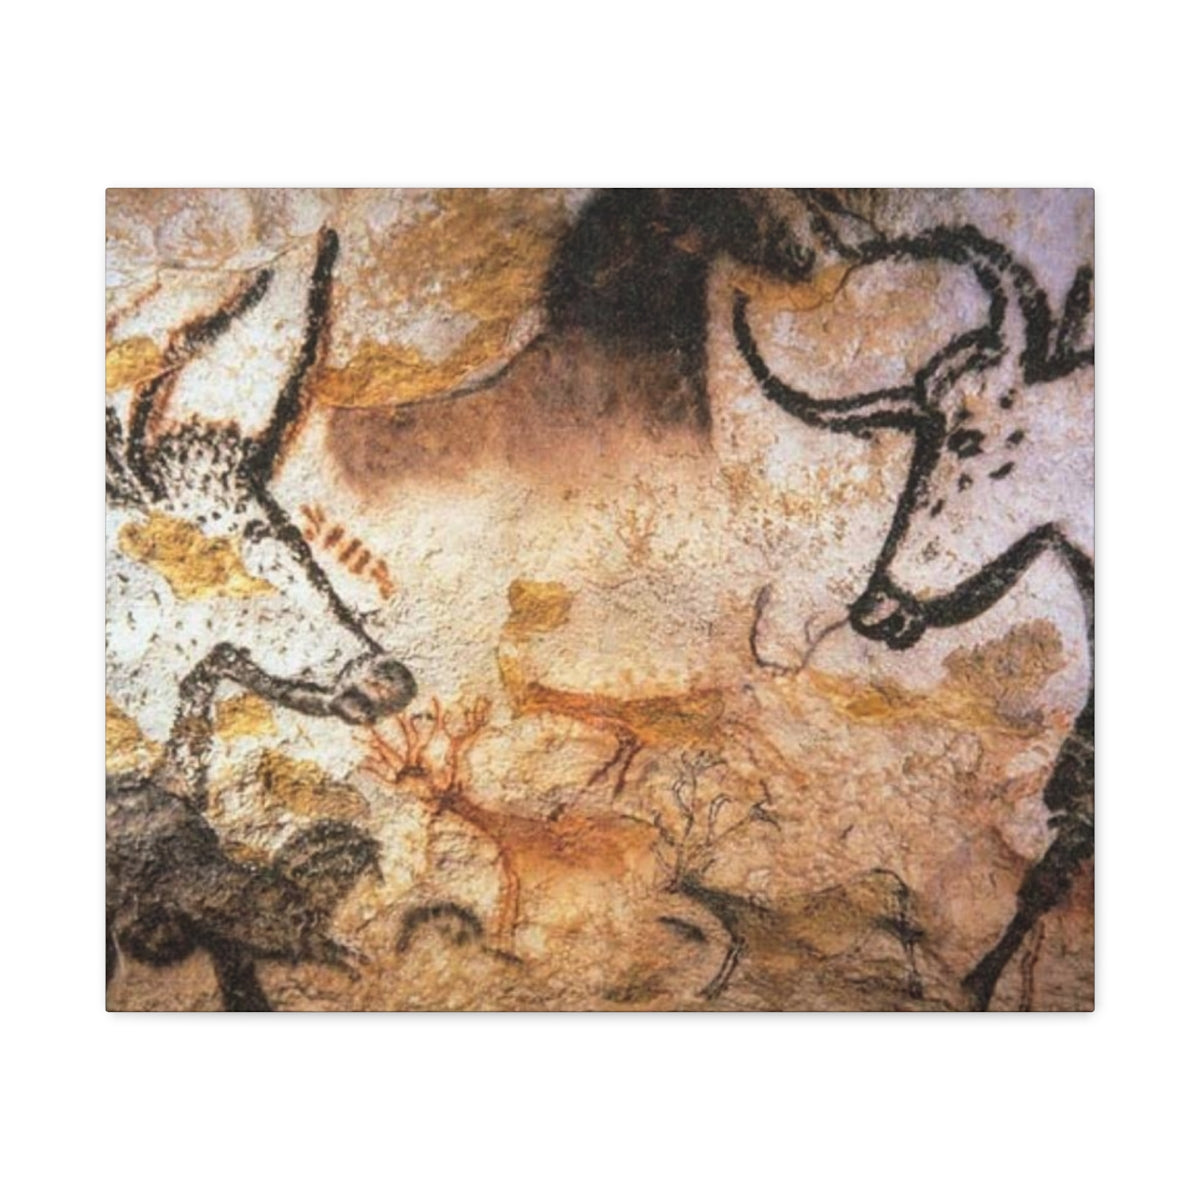 Lascaux Cave Art